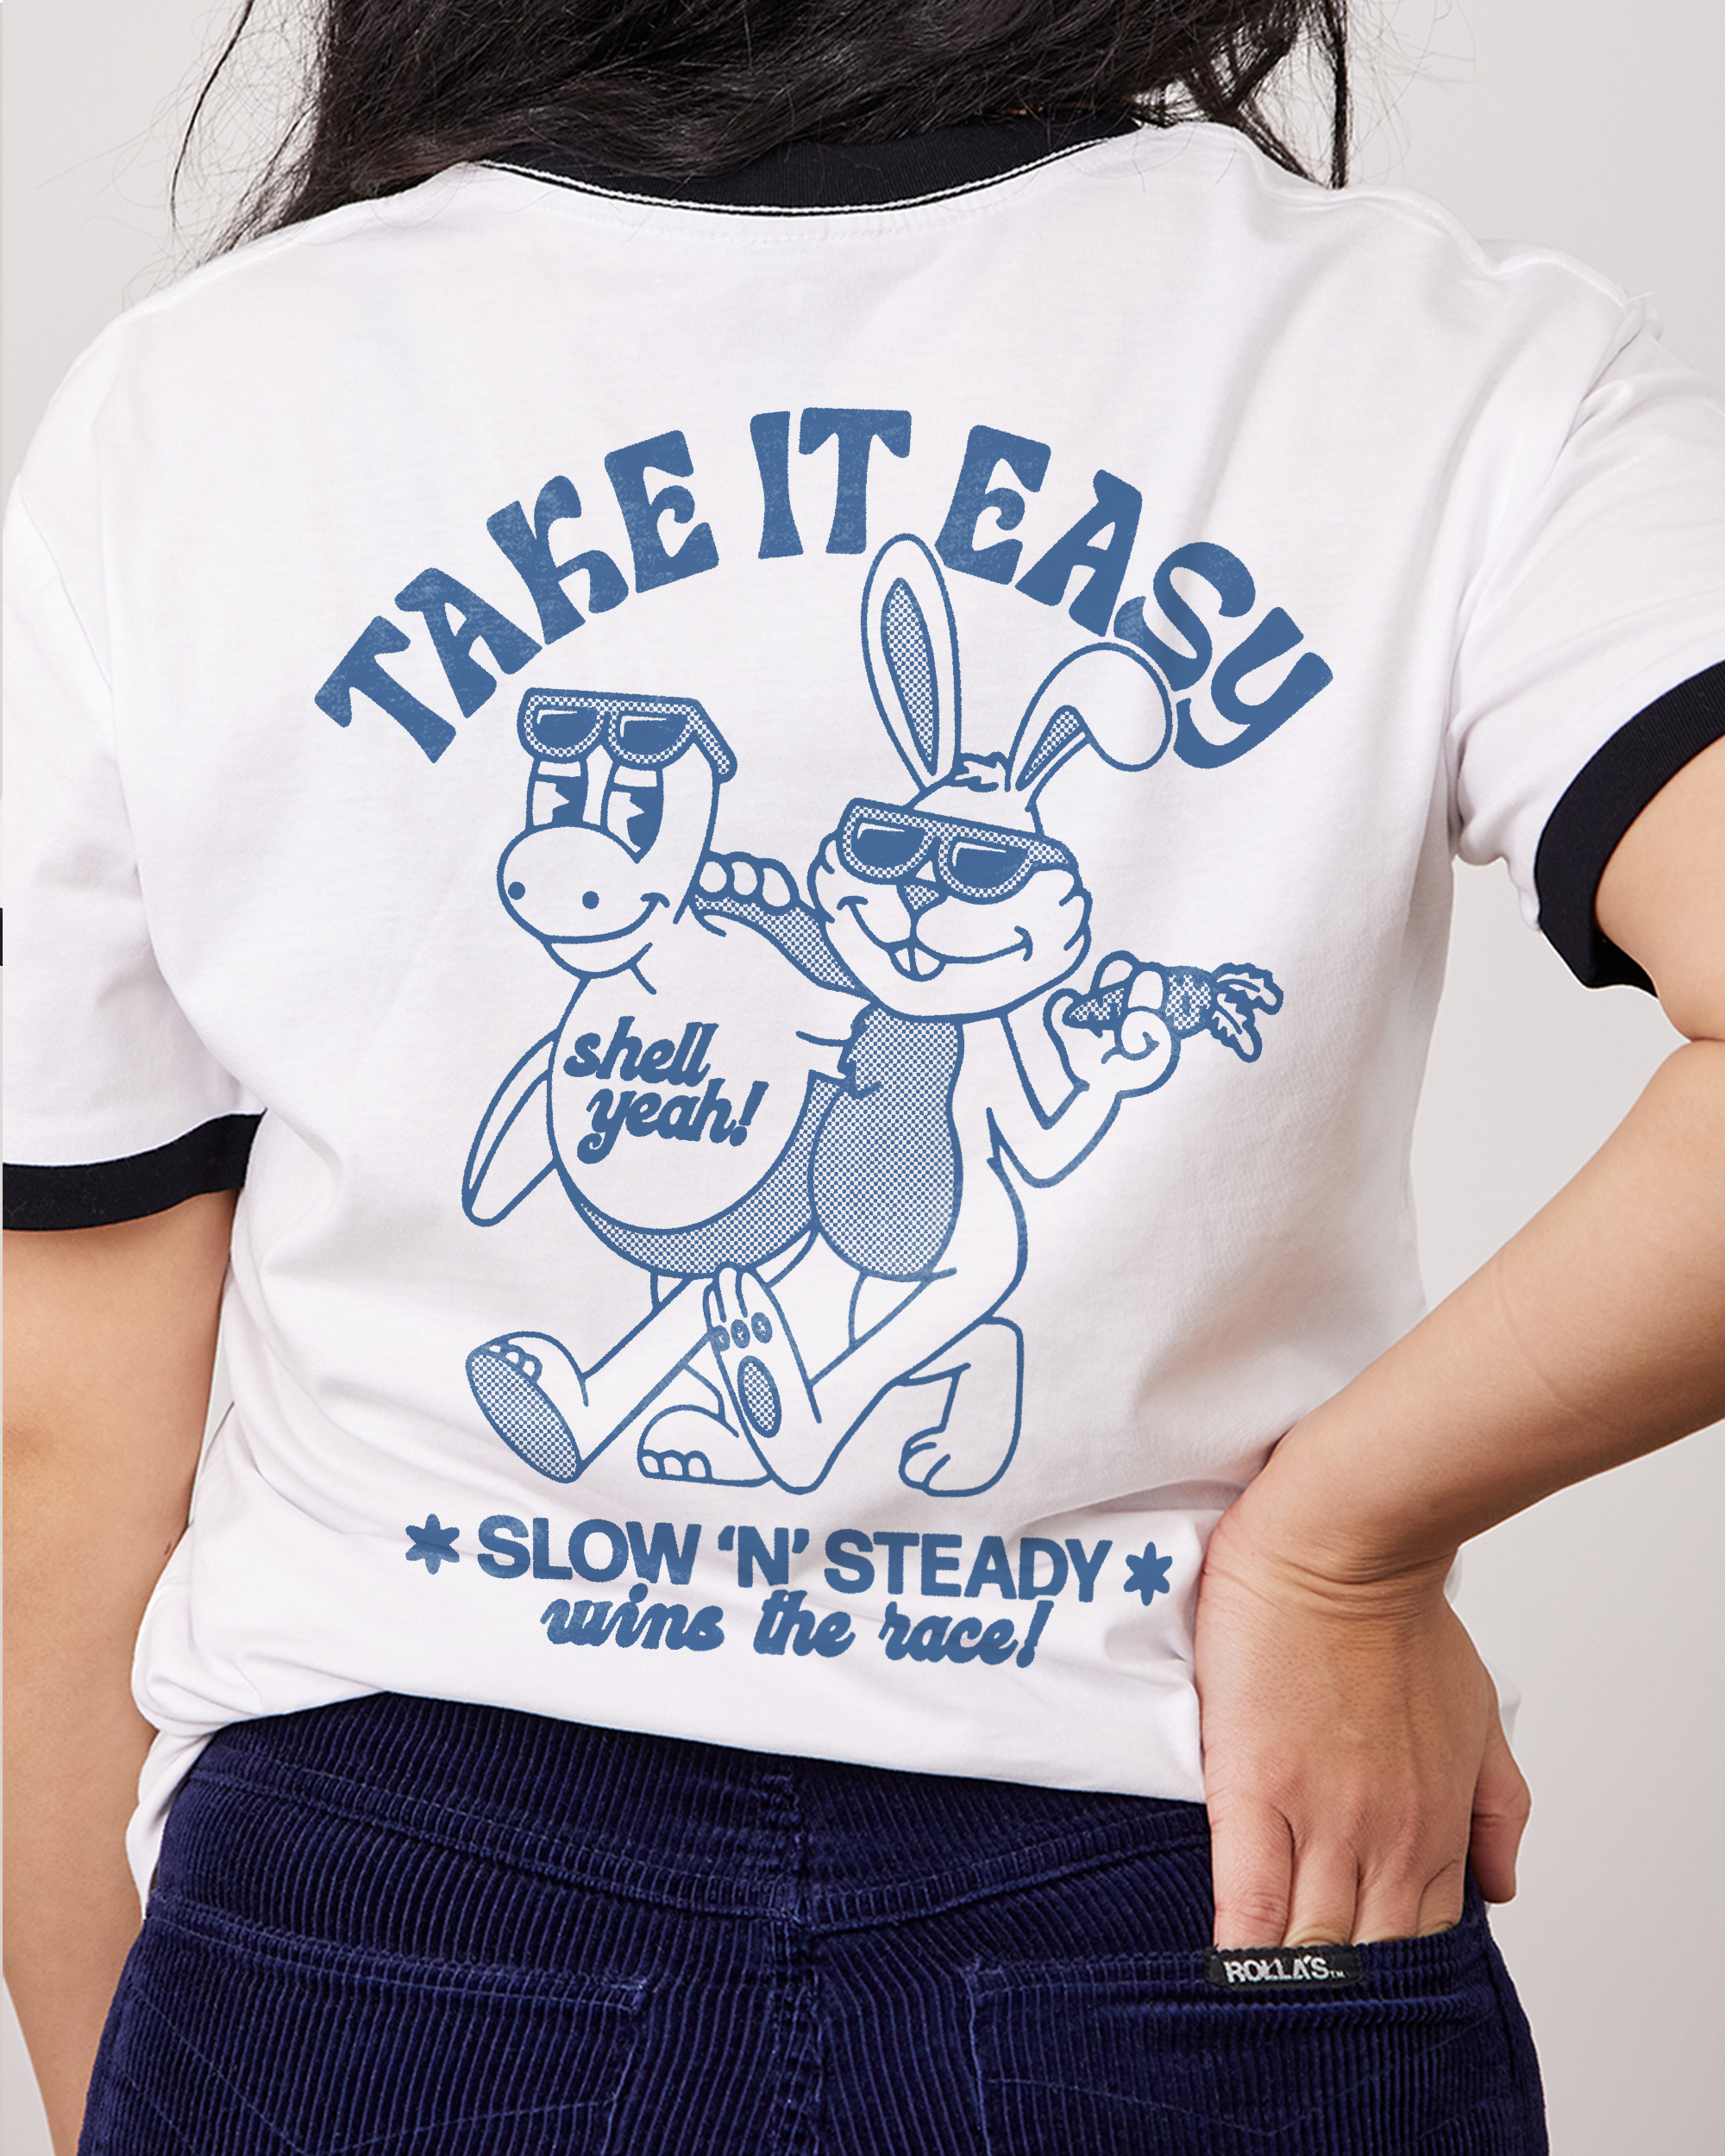 Take it Easy T-Shirt